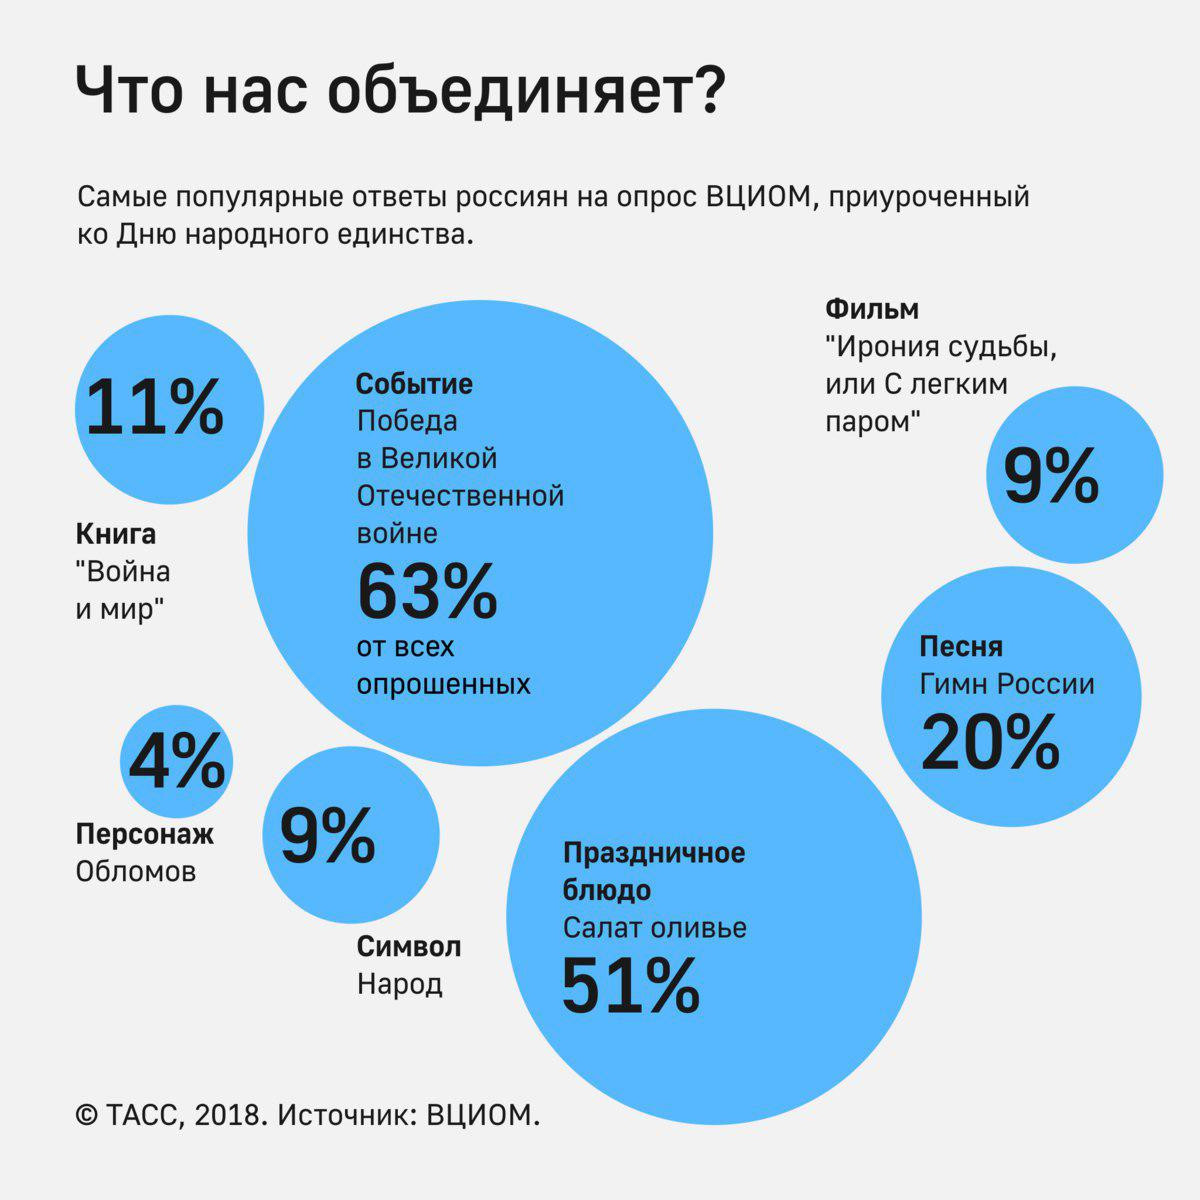 https://tass.ru/infographics/8577